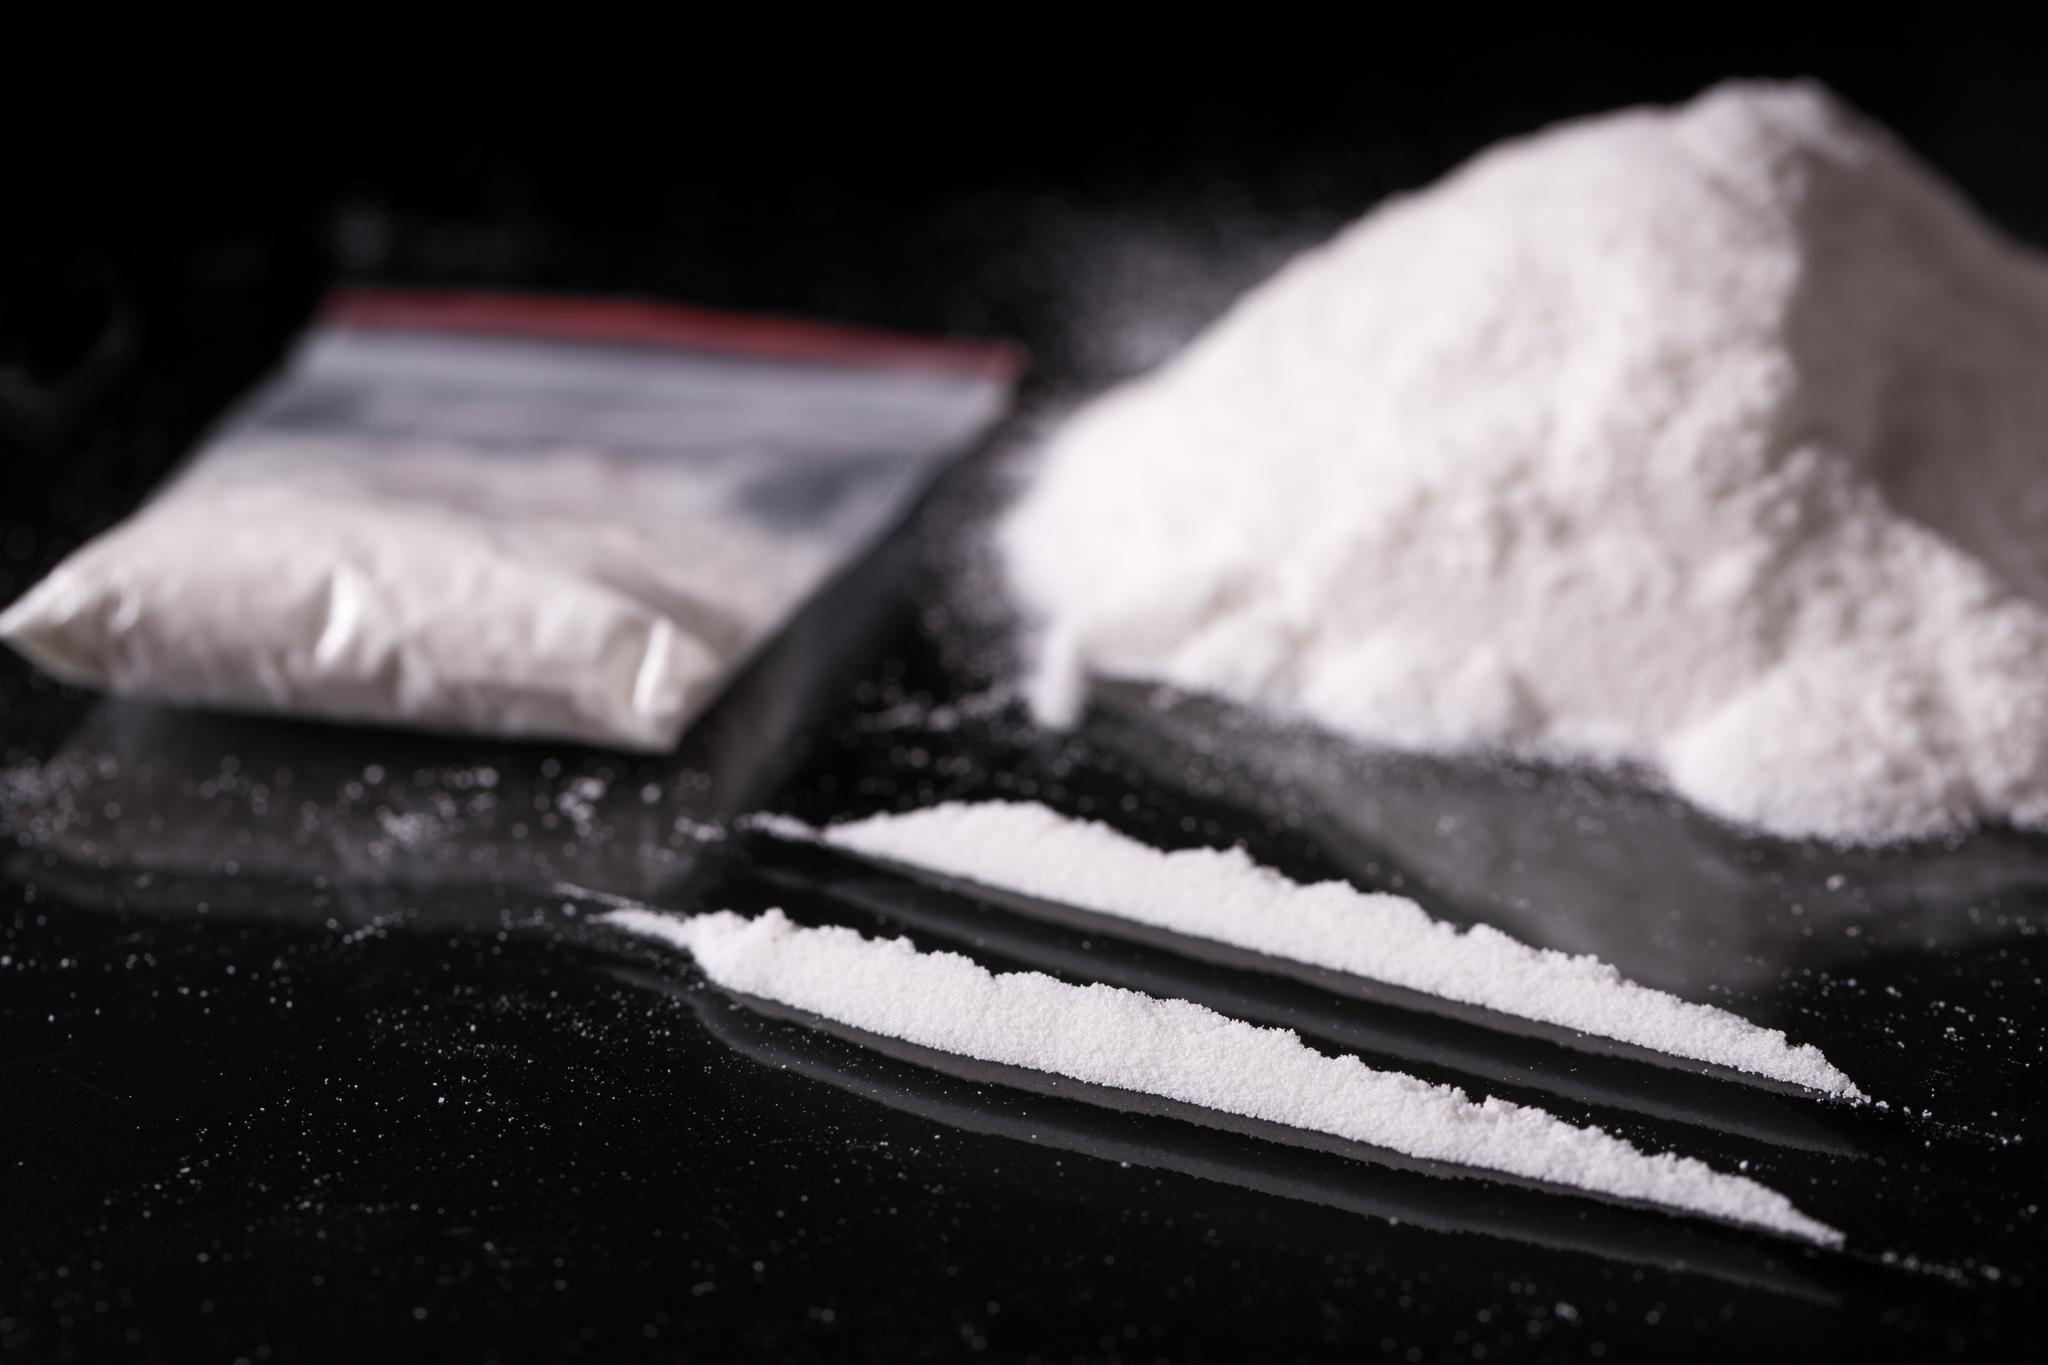 Interessen for kokain øker. Dette googler folk aller mest.